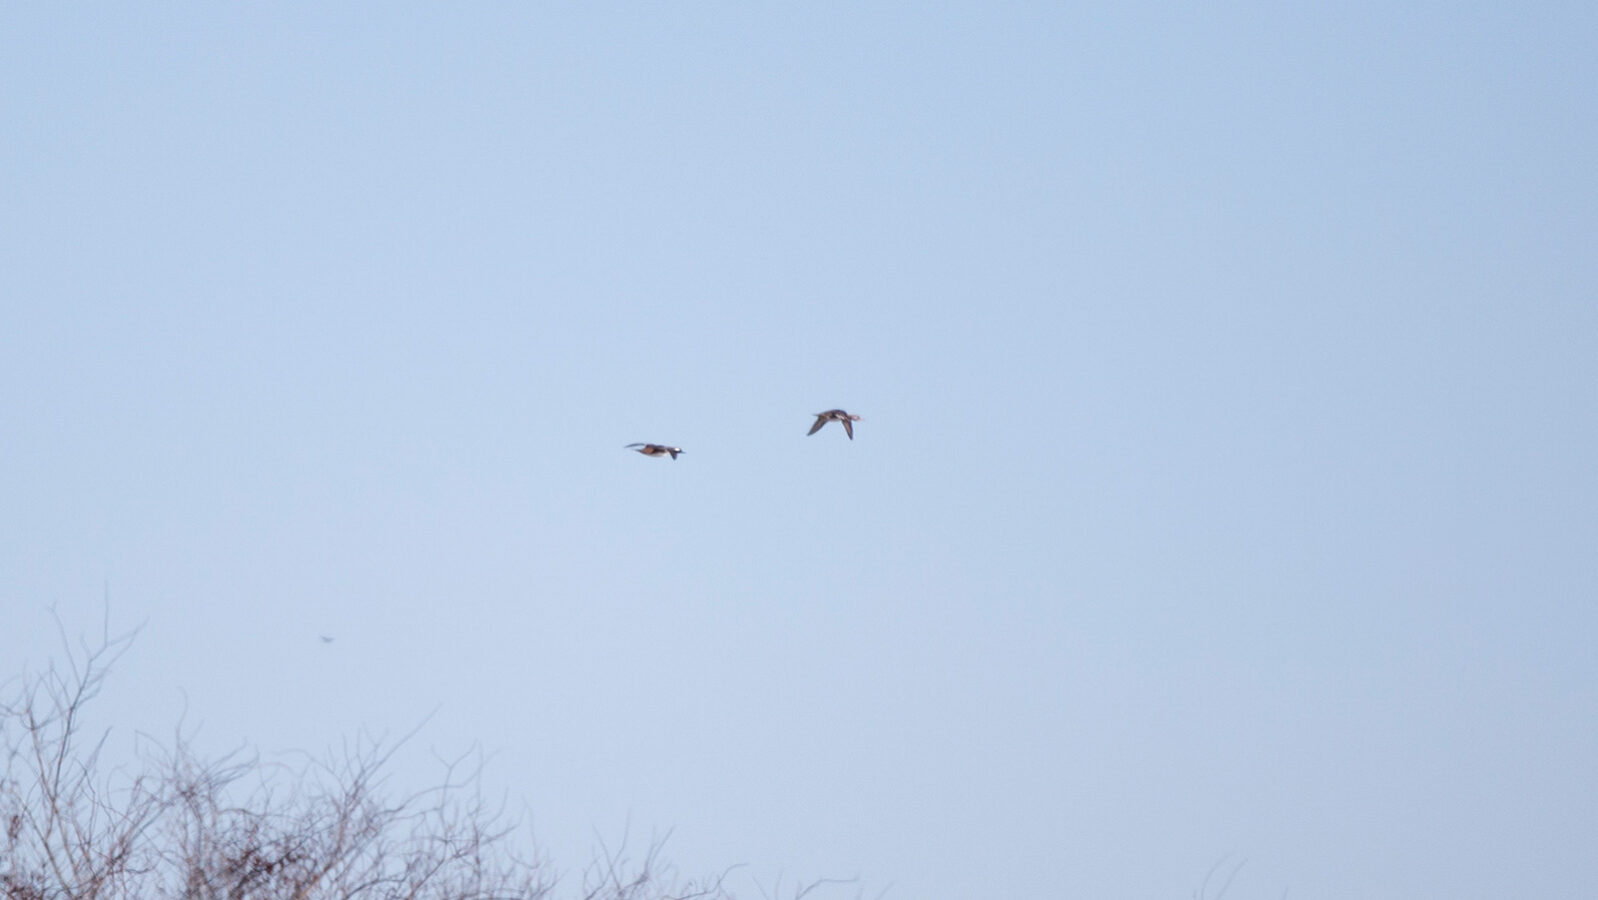 Pair of bufflehead ducks flying in the sky